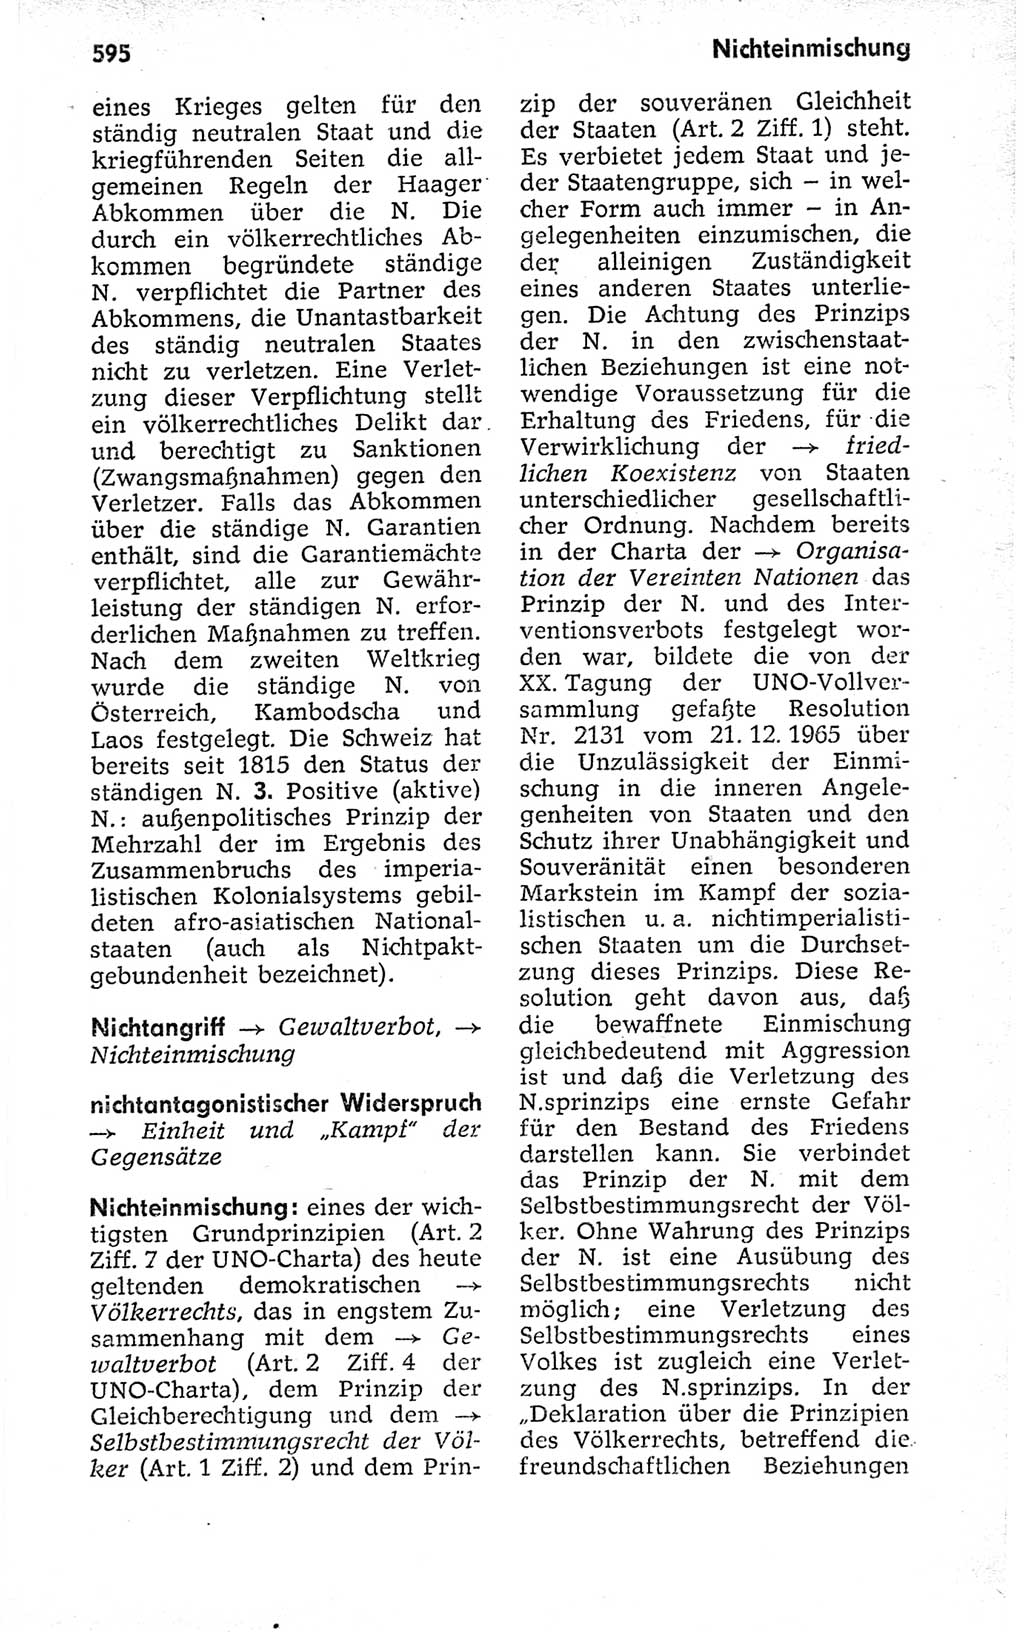 Kleines politisches Wörterbuch [Deutsche Demokratische Republik (DDR)] 1973, Seite 595 (Kl. pol. Wb. DDR 1973, S. 595)